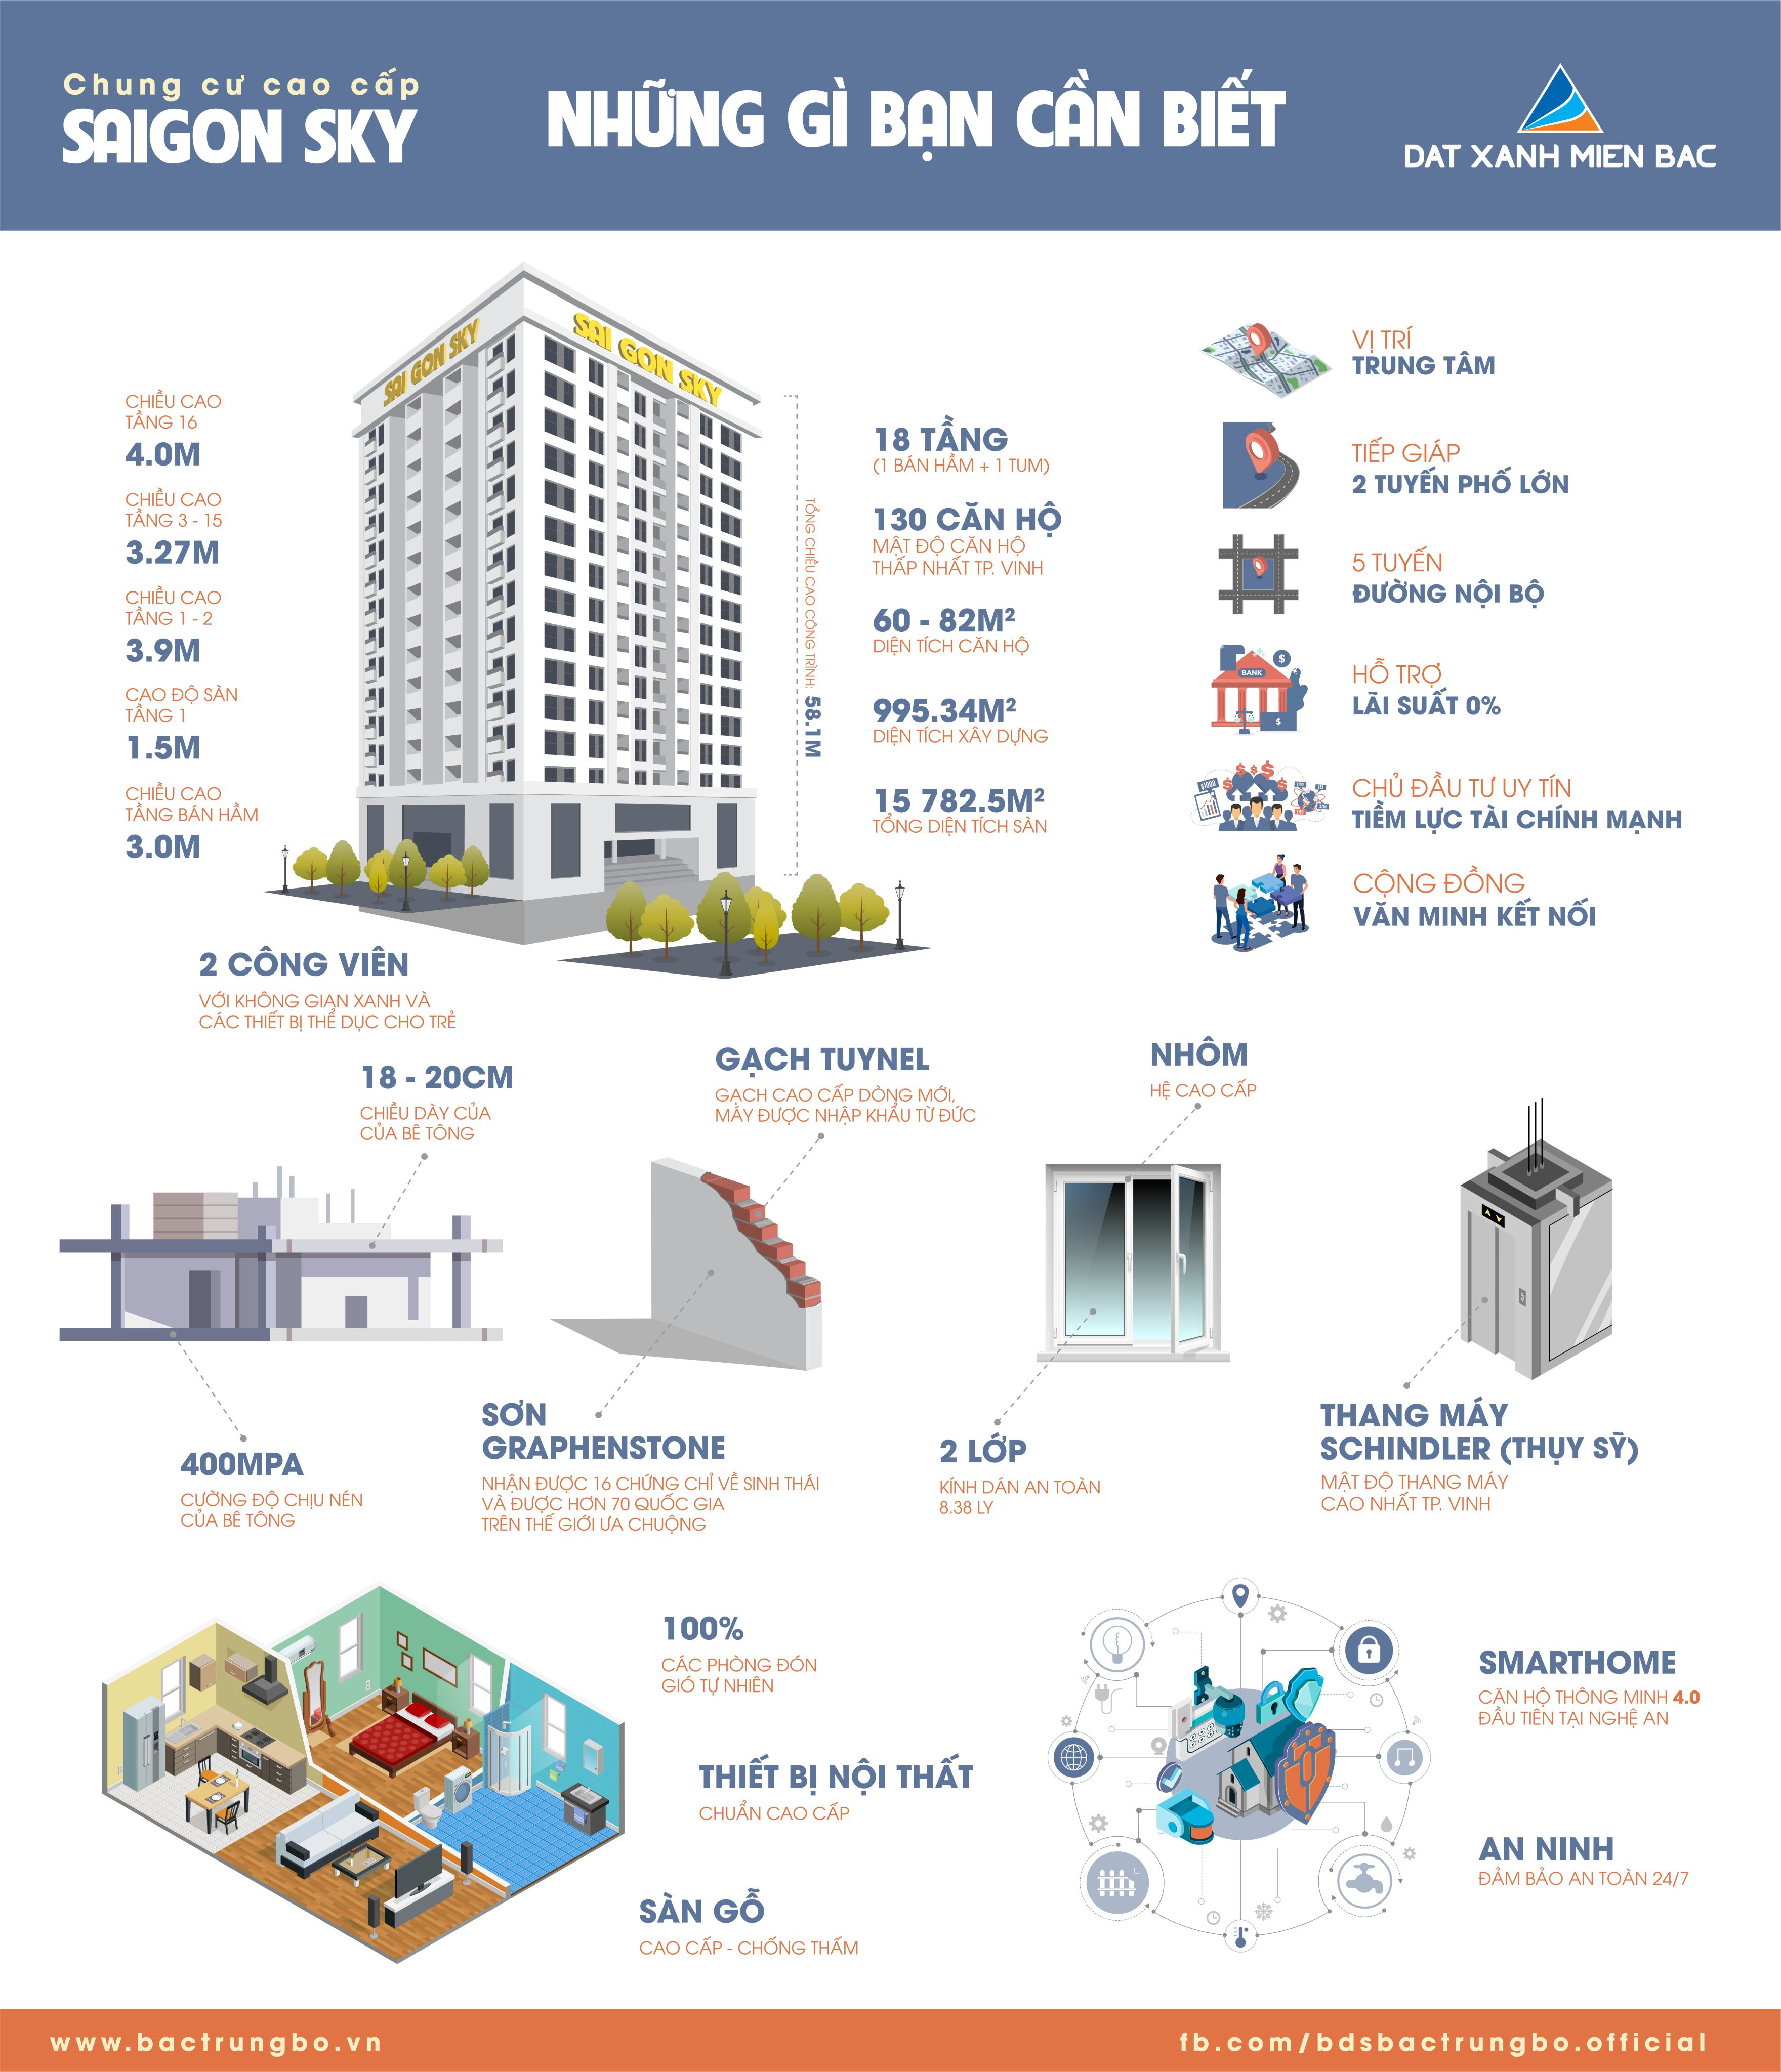 Điểm nhấn của Sai Gon Sky là mật độ căn hộ thấp nhất và mật độ thang máy cao nhất TP Vinh với chỉ 130 căn hộ và 4 thang máy (33 căn/thang). Ảnh: Tư liệu